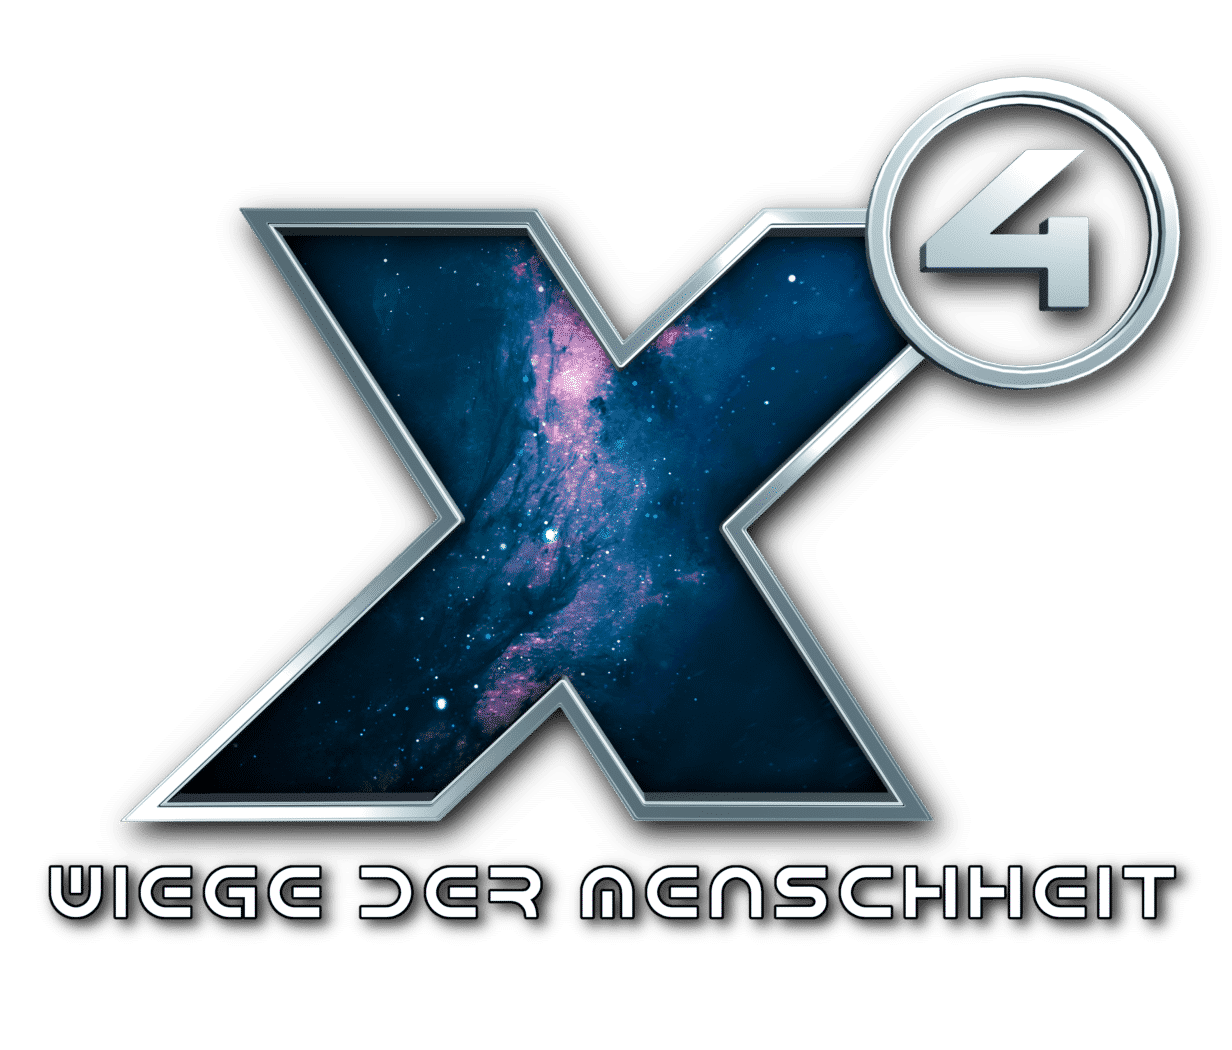 x4 wiege der menschheit logo